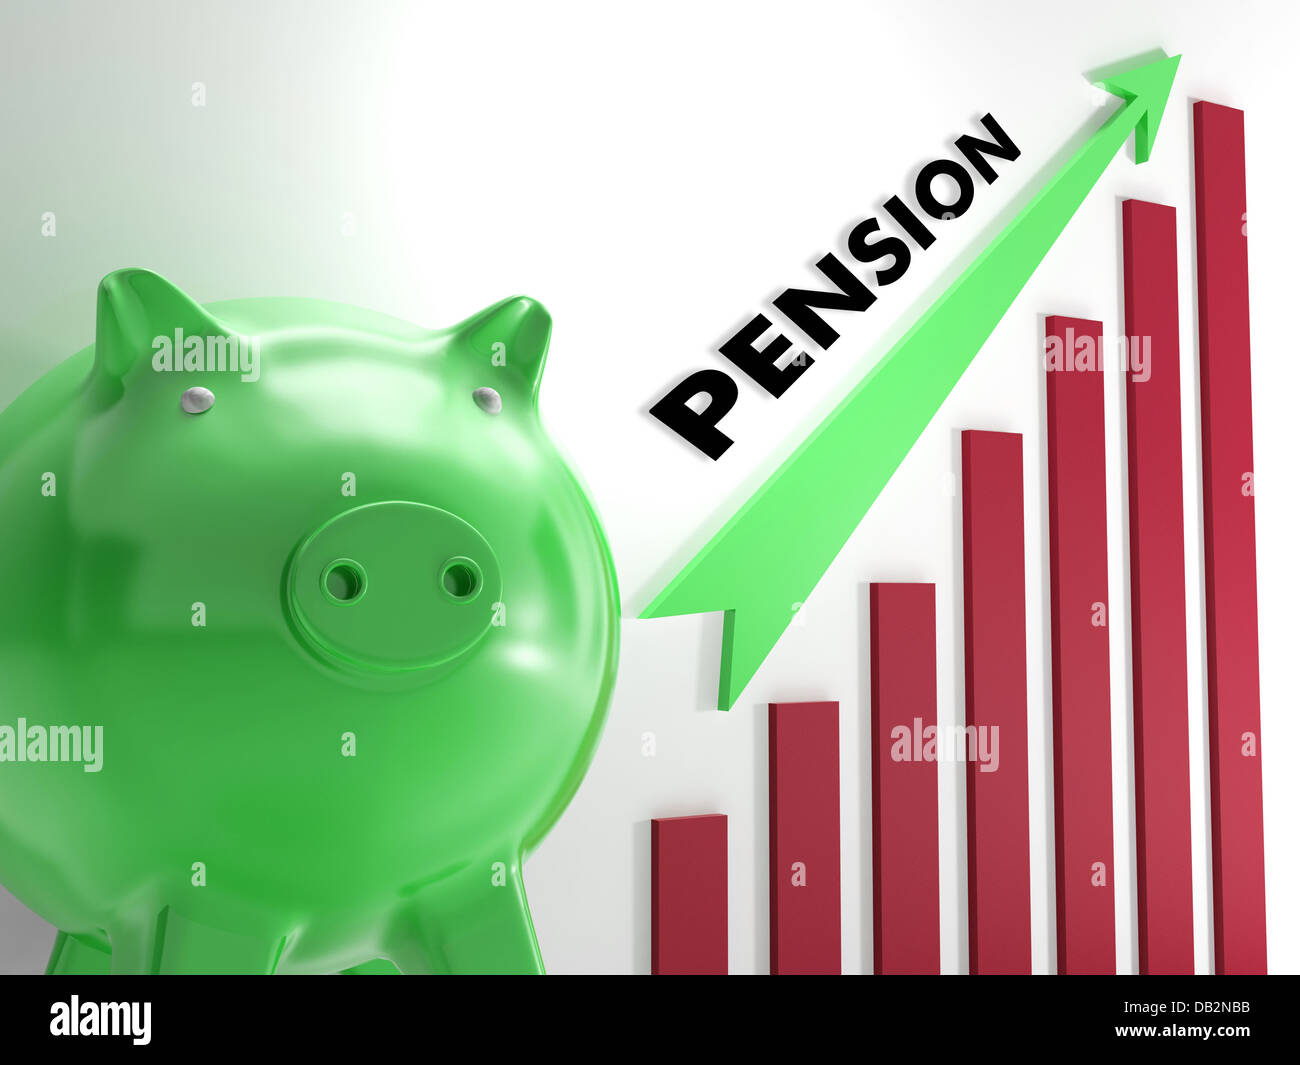 Erhöhung der Pension Diagramm zeigt persönliches Wachstum Stockfoto